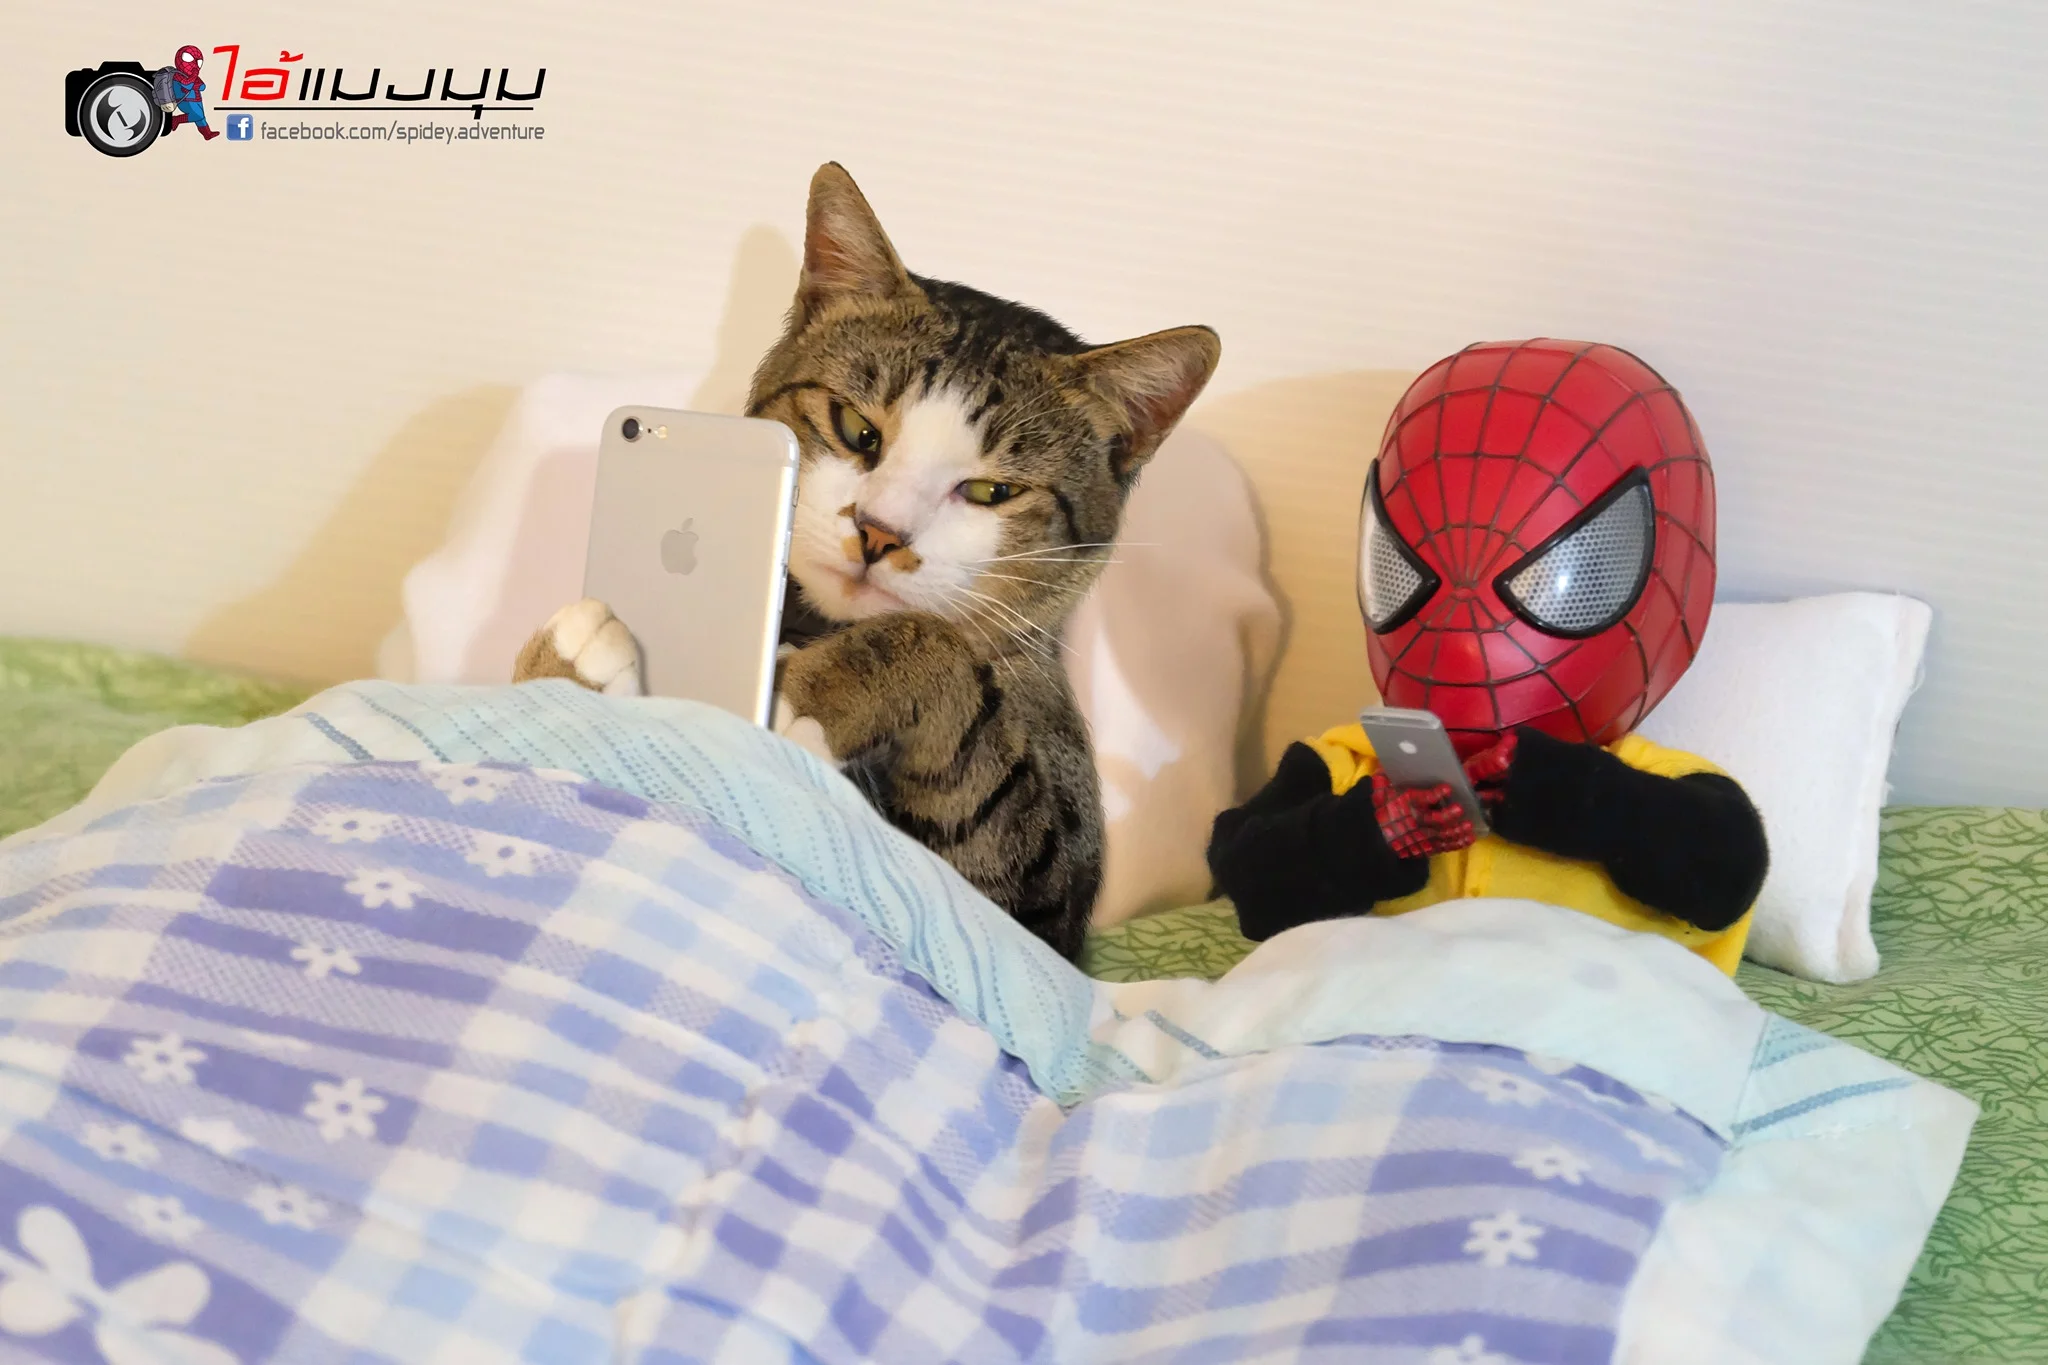 Художник додав до фото з котиками зображення Людини-павука – це виглядає дуже смішно - фото 459363